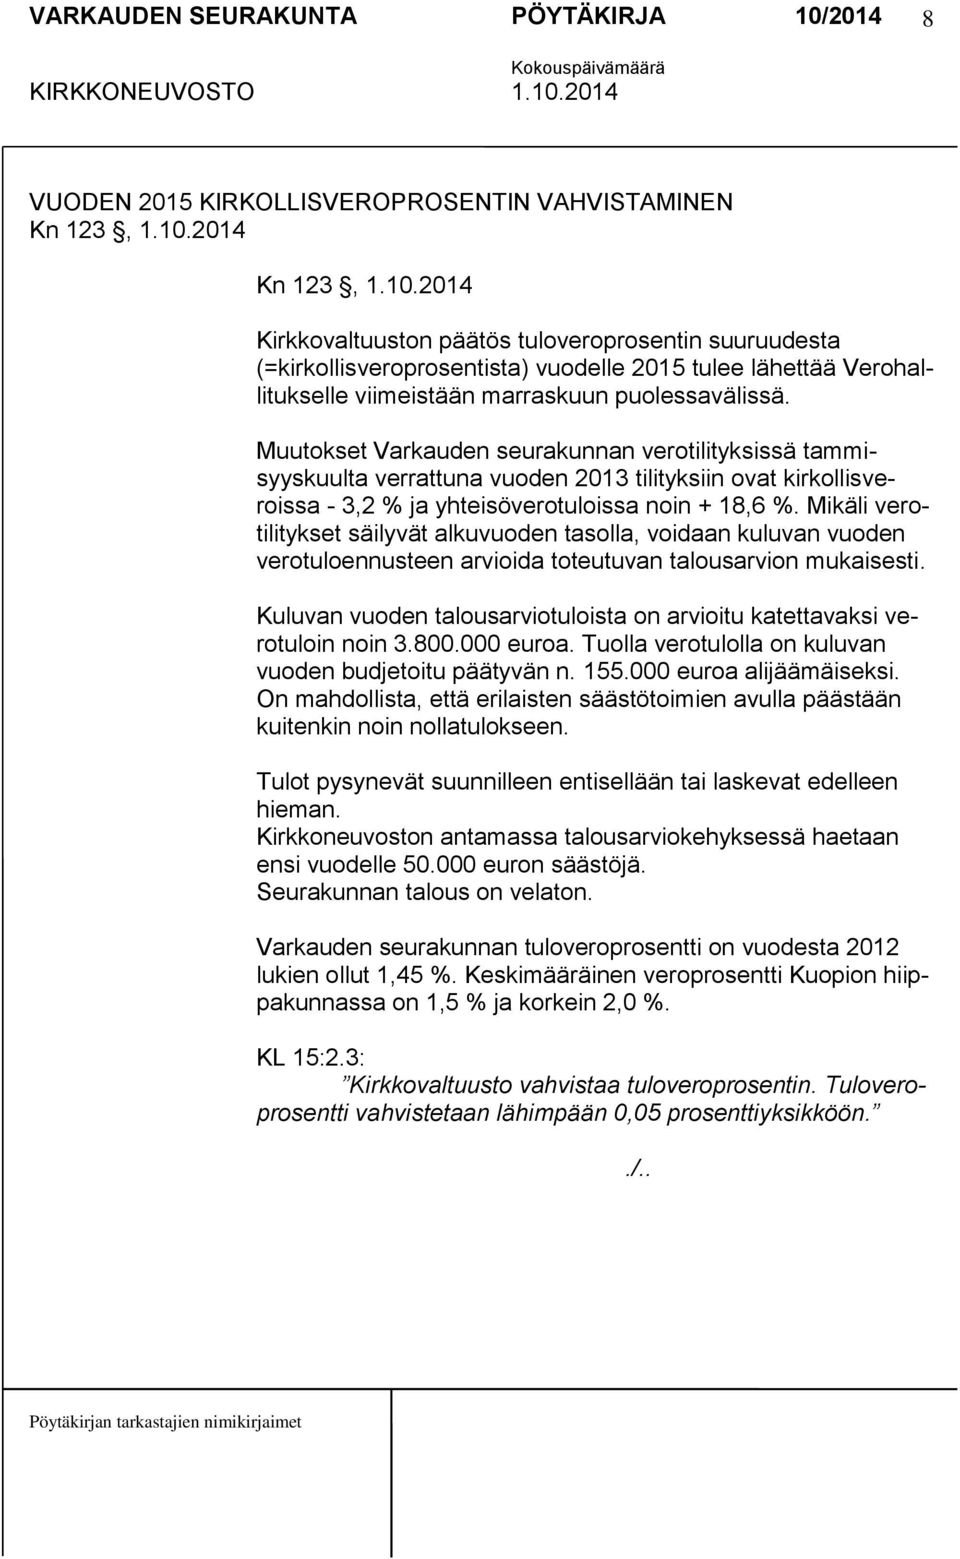 Muutokset Varkauden seurakunnan verotilityksissä tammisyyskuulta verrattuna vuoden 2013 tilityksiin ovat kirkollisveroissa - 3,2 % ja yhteisöverotuloissa noin + 18,6 %.